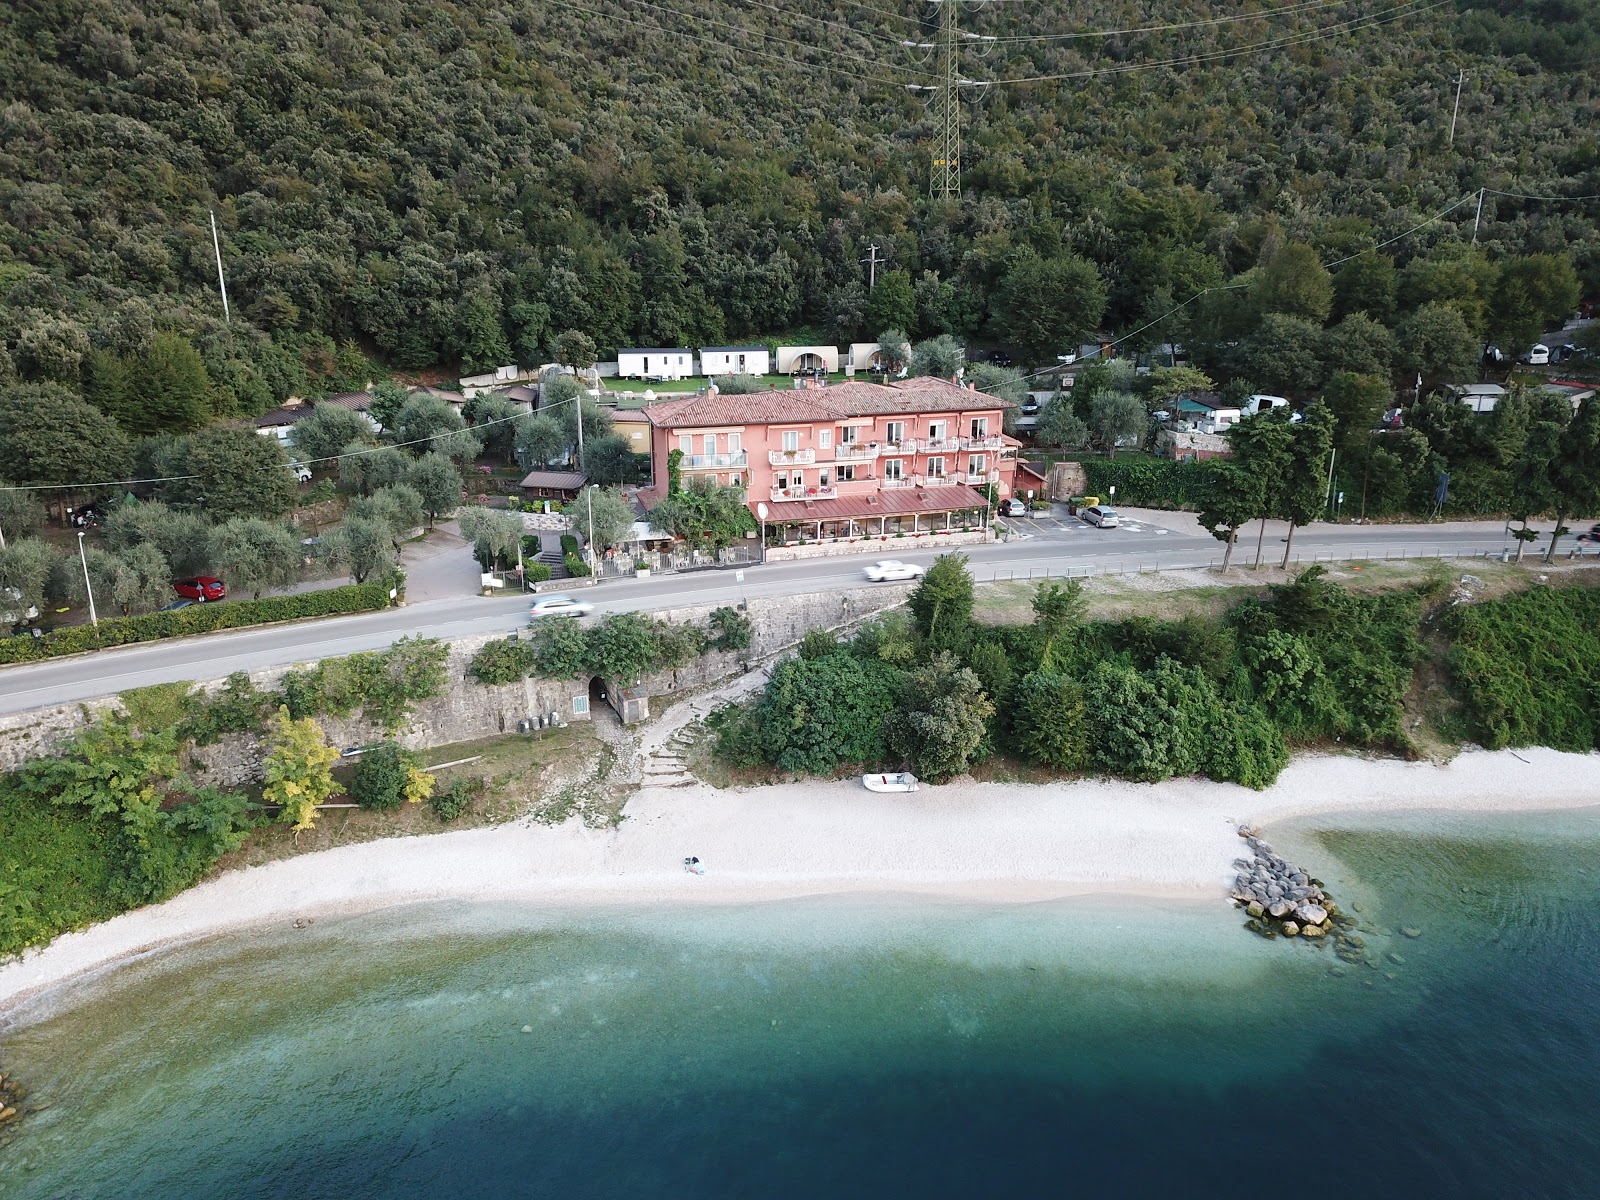 Foto de Spiaggia Baitone com alto nível de limpeza